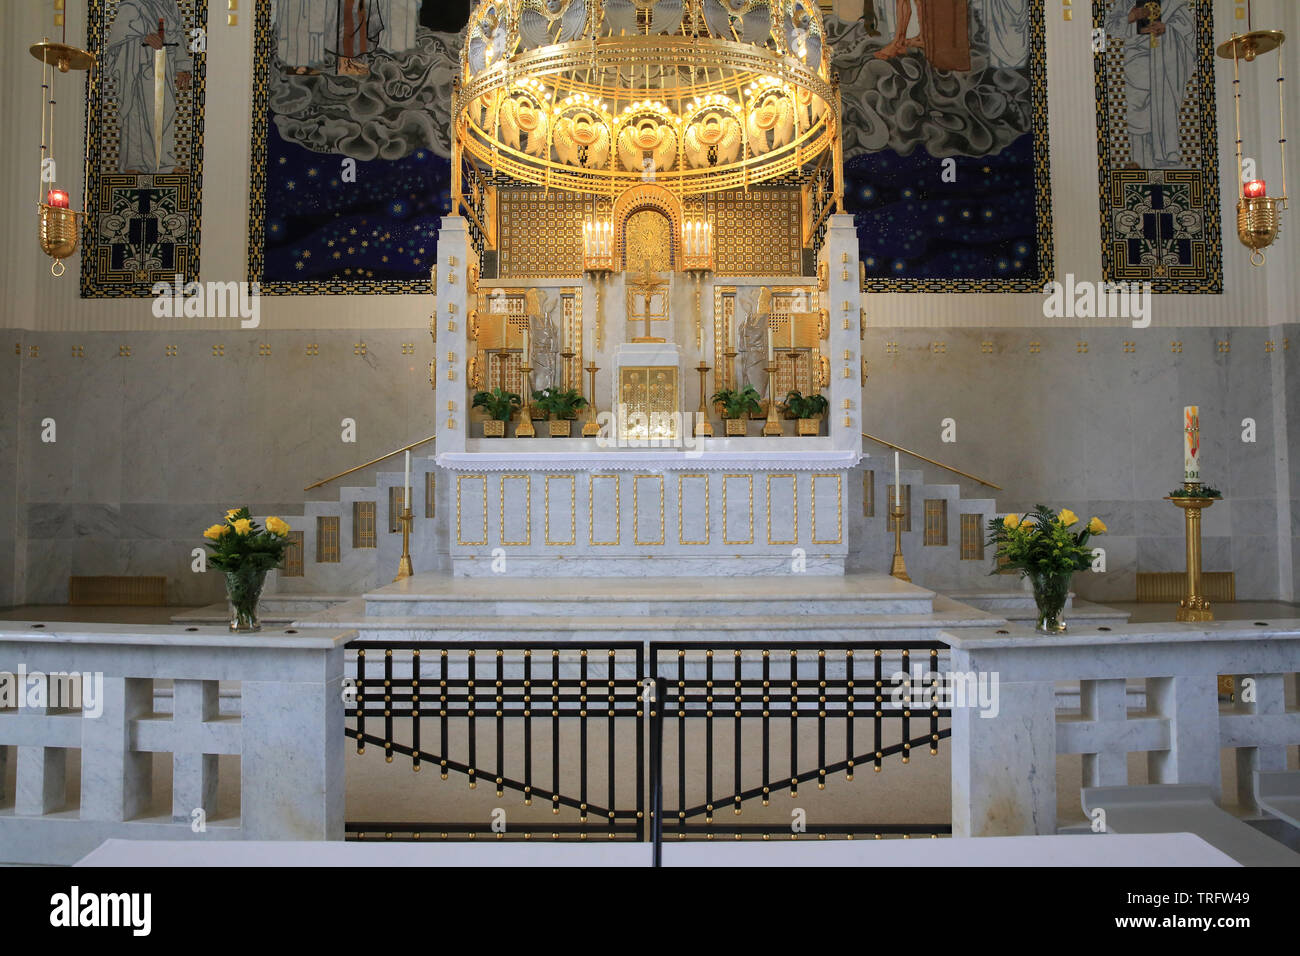 Le Maître-autel et son Baldachin doré en cuivre. Eglise Saint-Léopold am Steinhof. Construite par Otto Wagner entre 1902 et 1907. Vienne. Autriche. Stockfoto